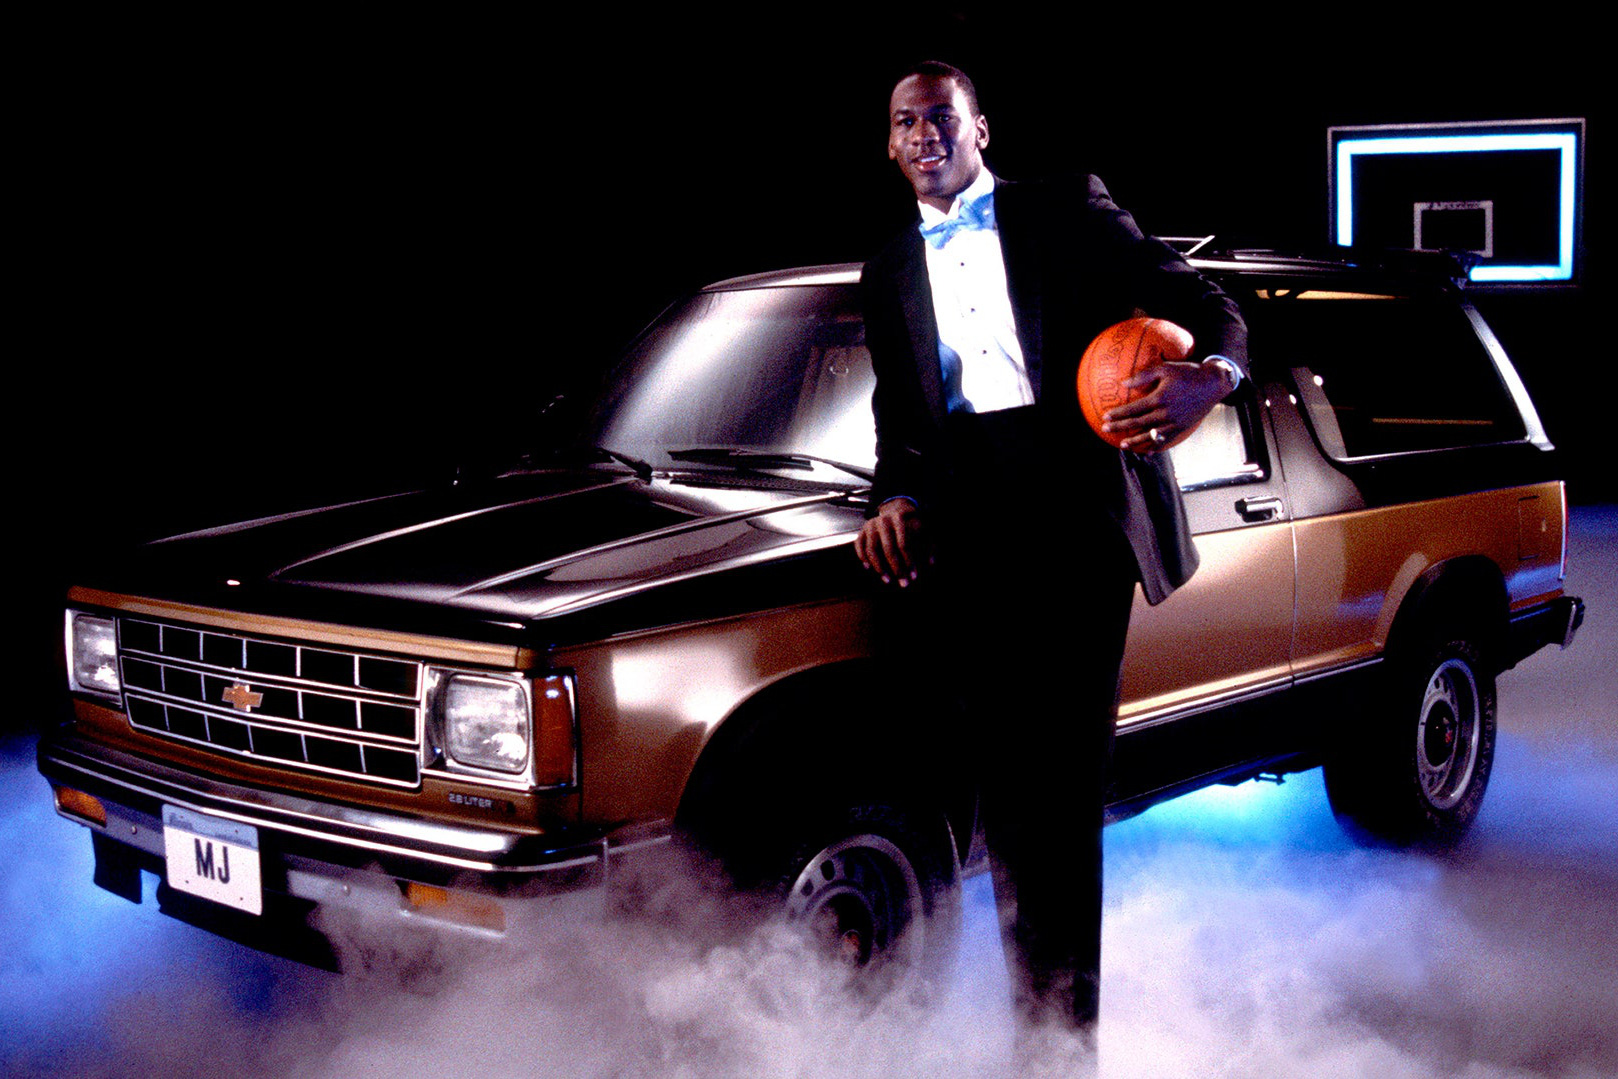 Sở hữu dàn xe hàng triệu USD, huyền thoại bóng rổ Michael Jordan vẫn phải tậu Toyota Land Cruiser để đi chơi thể thao